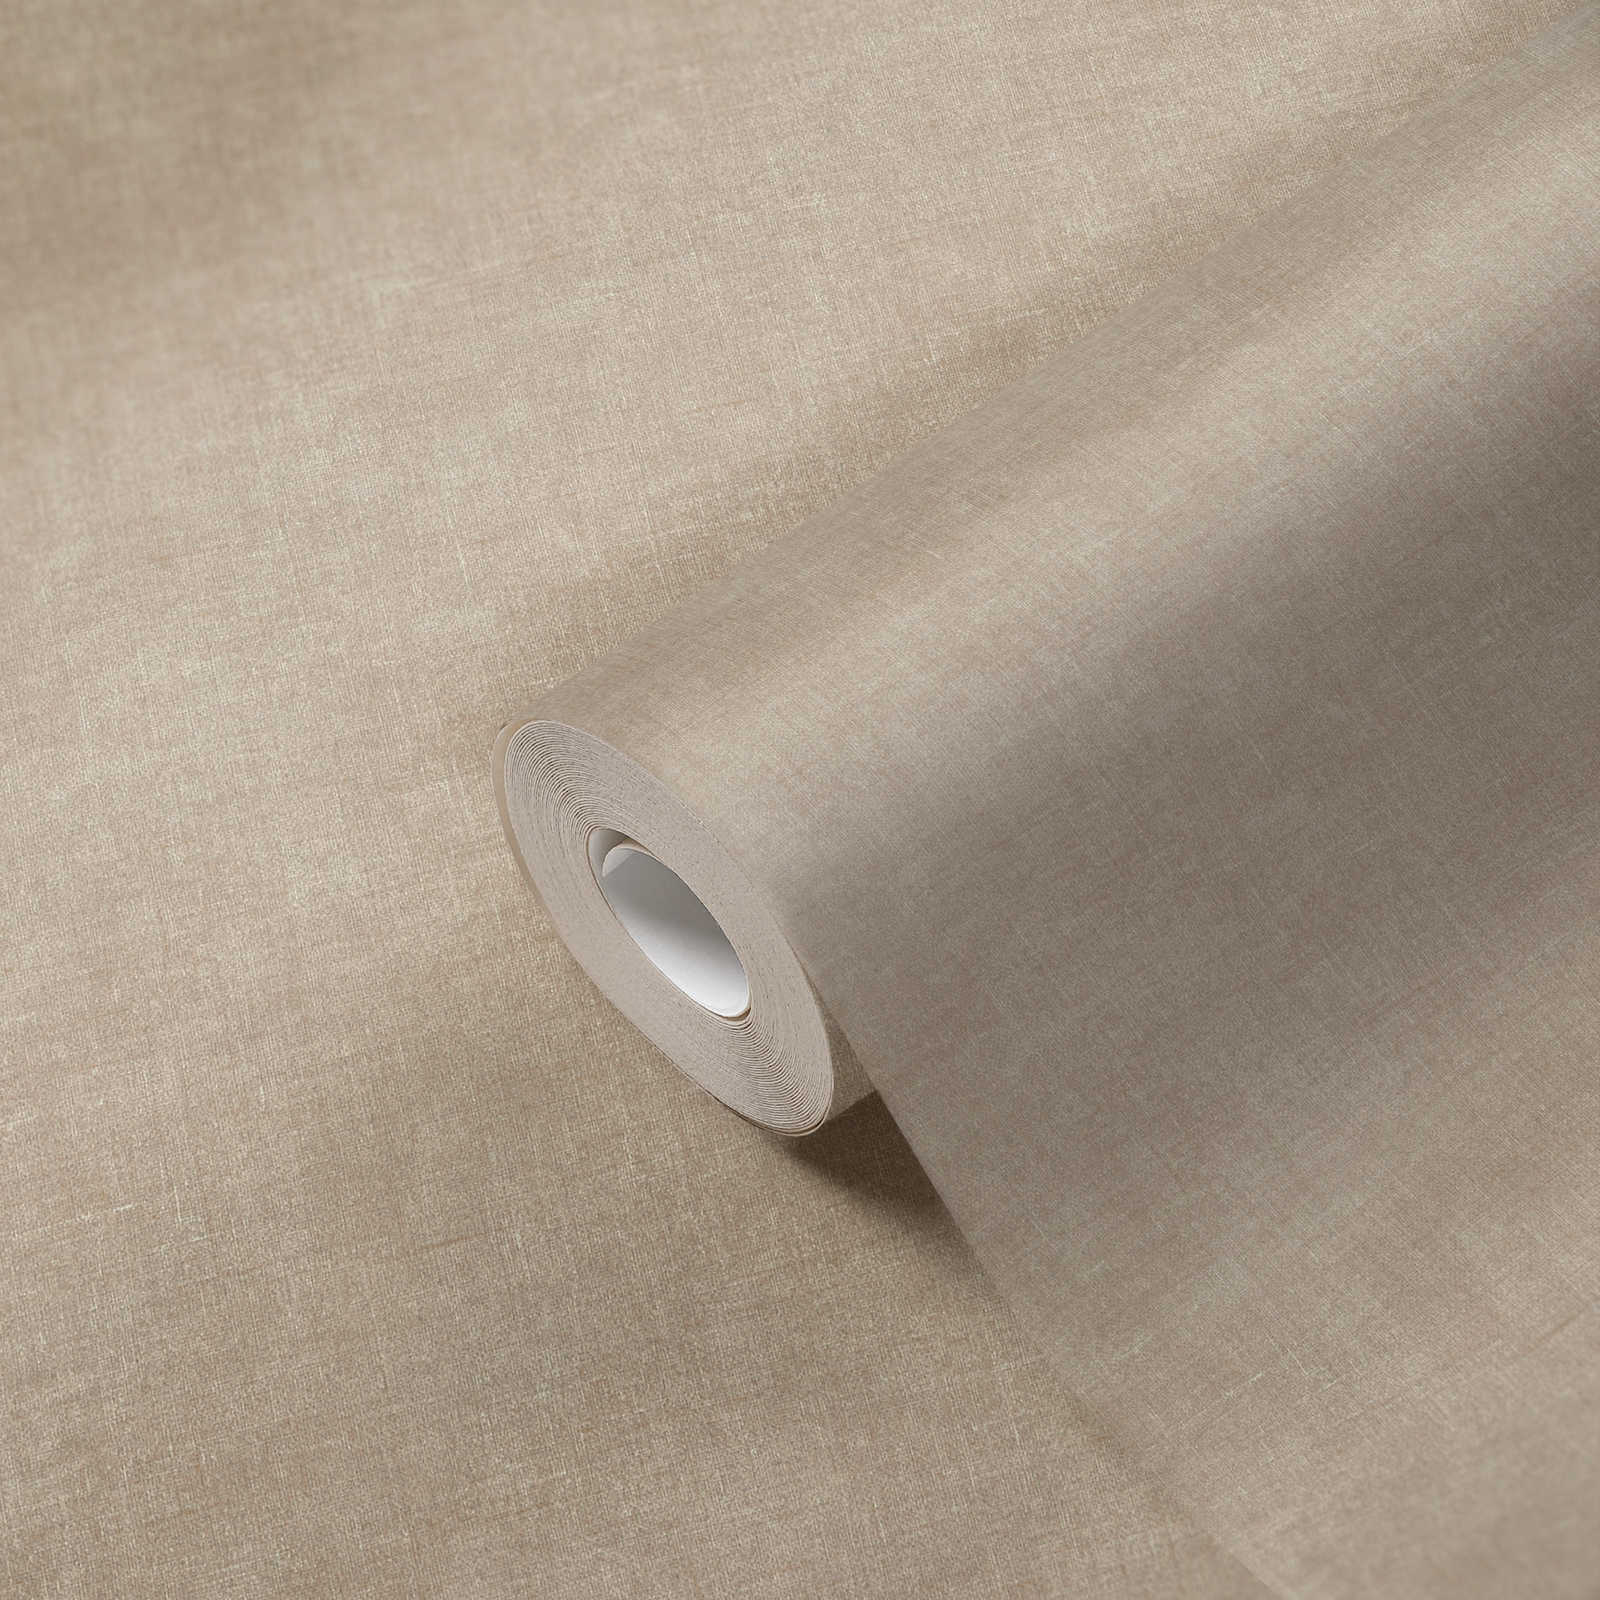             Papier peint uni & mat couleur sable avec motifs structurés
        